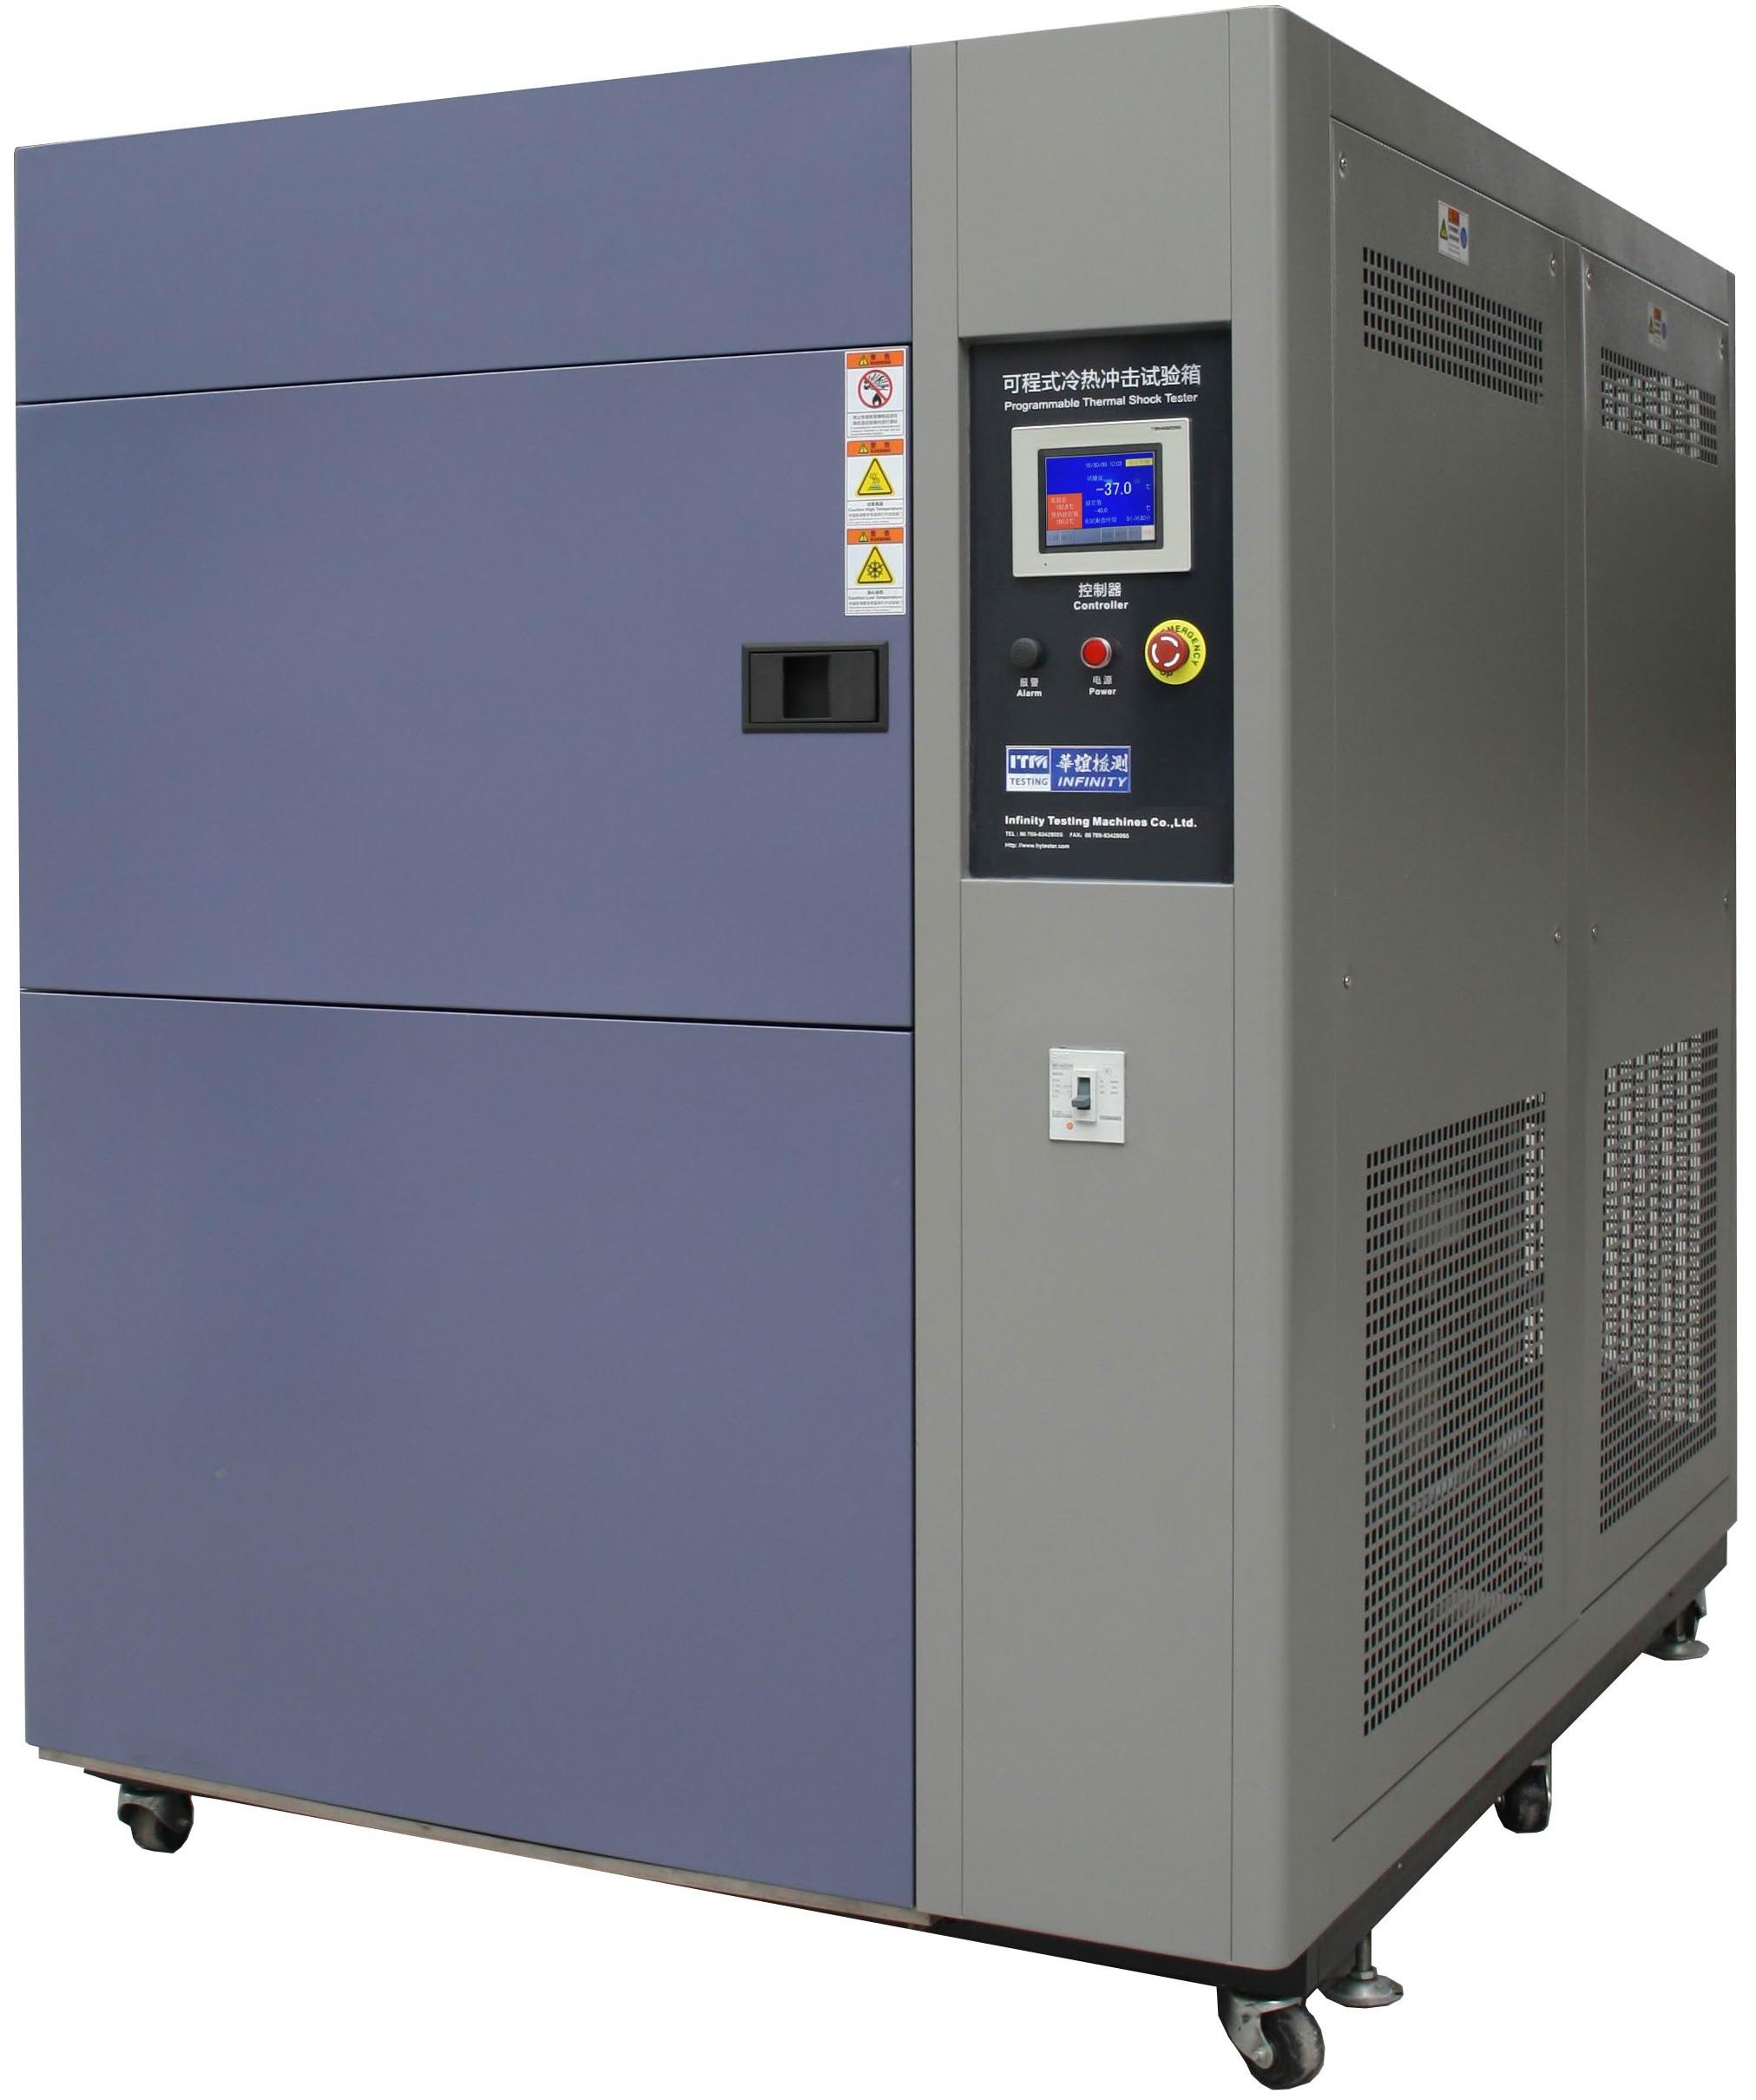 โปรแกรมห้องทดสอบการกระแทกทางอุณหภูมิสิ่งแวดล้อม 50L ~ 600L ระบบเย็นแบบ Cascade